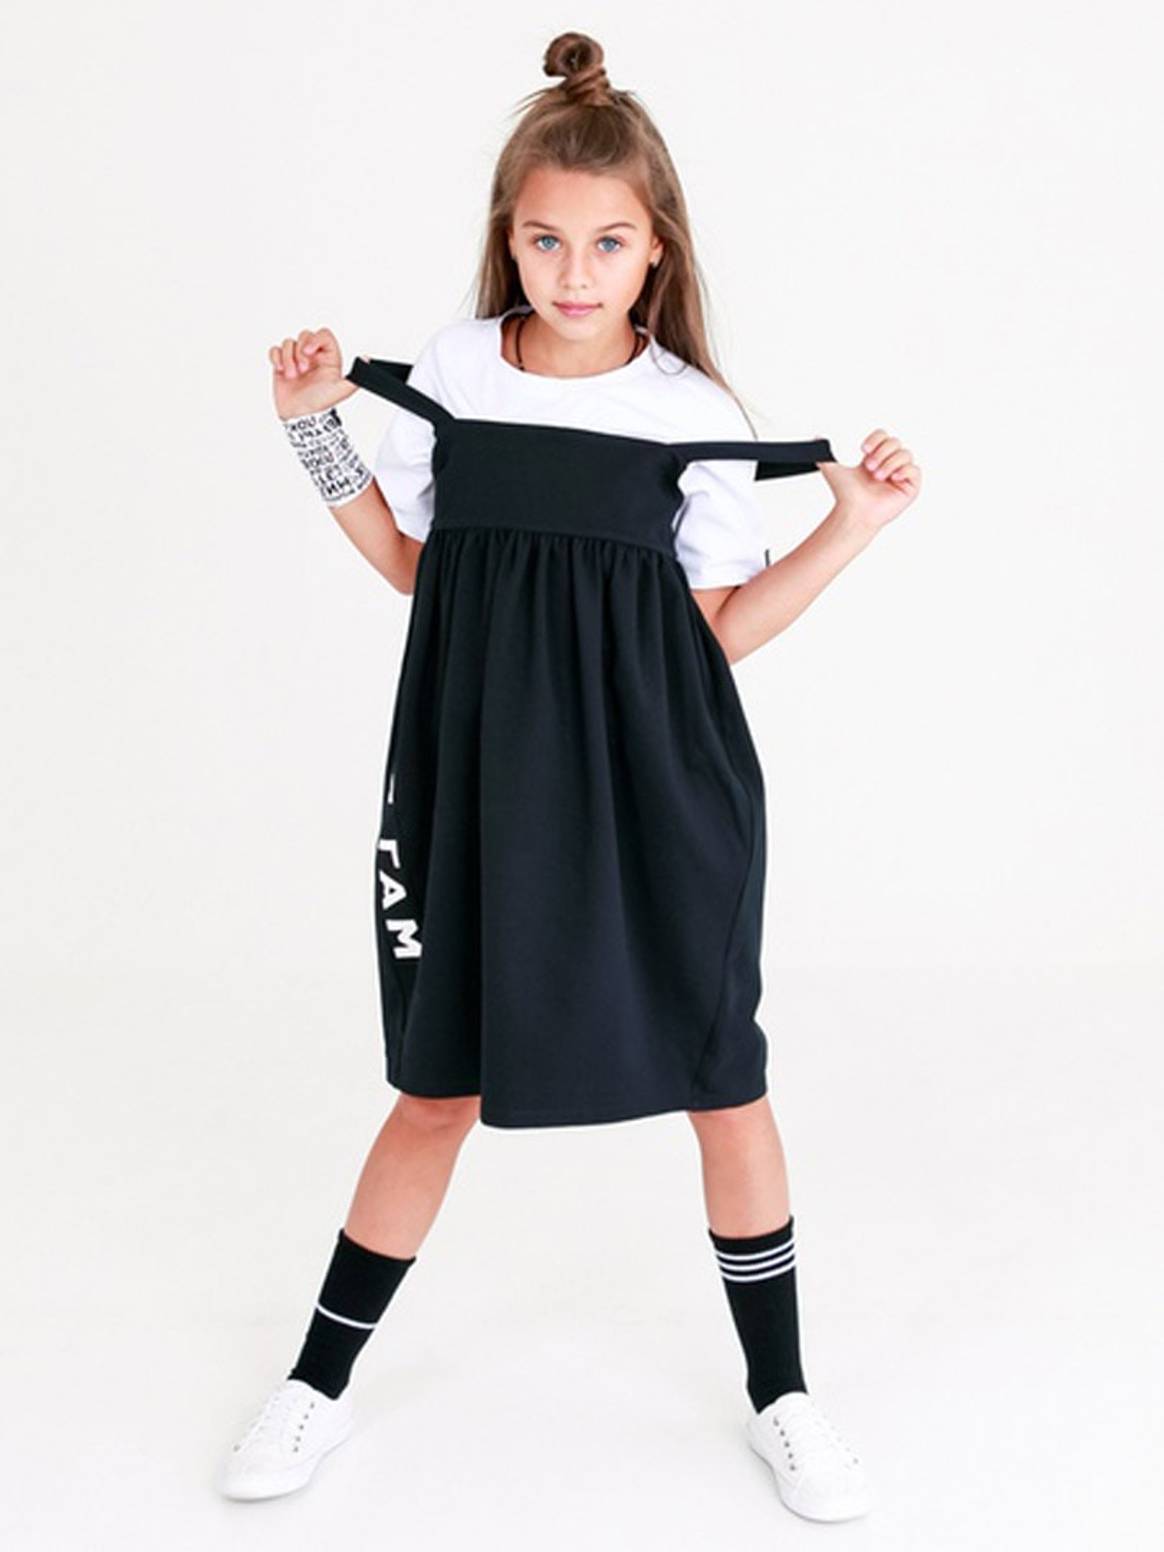 Ростовский бренд детской одежды выпустил коллекцию школьной одежды совместно с Тимати